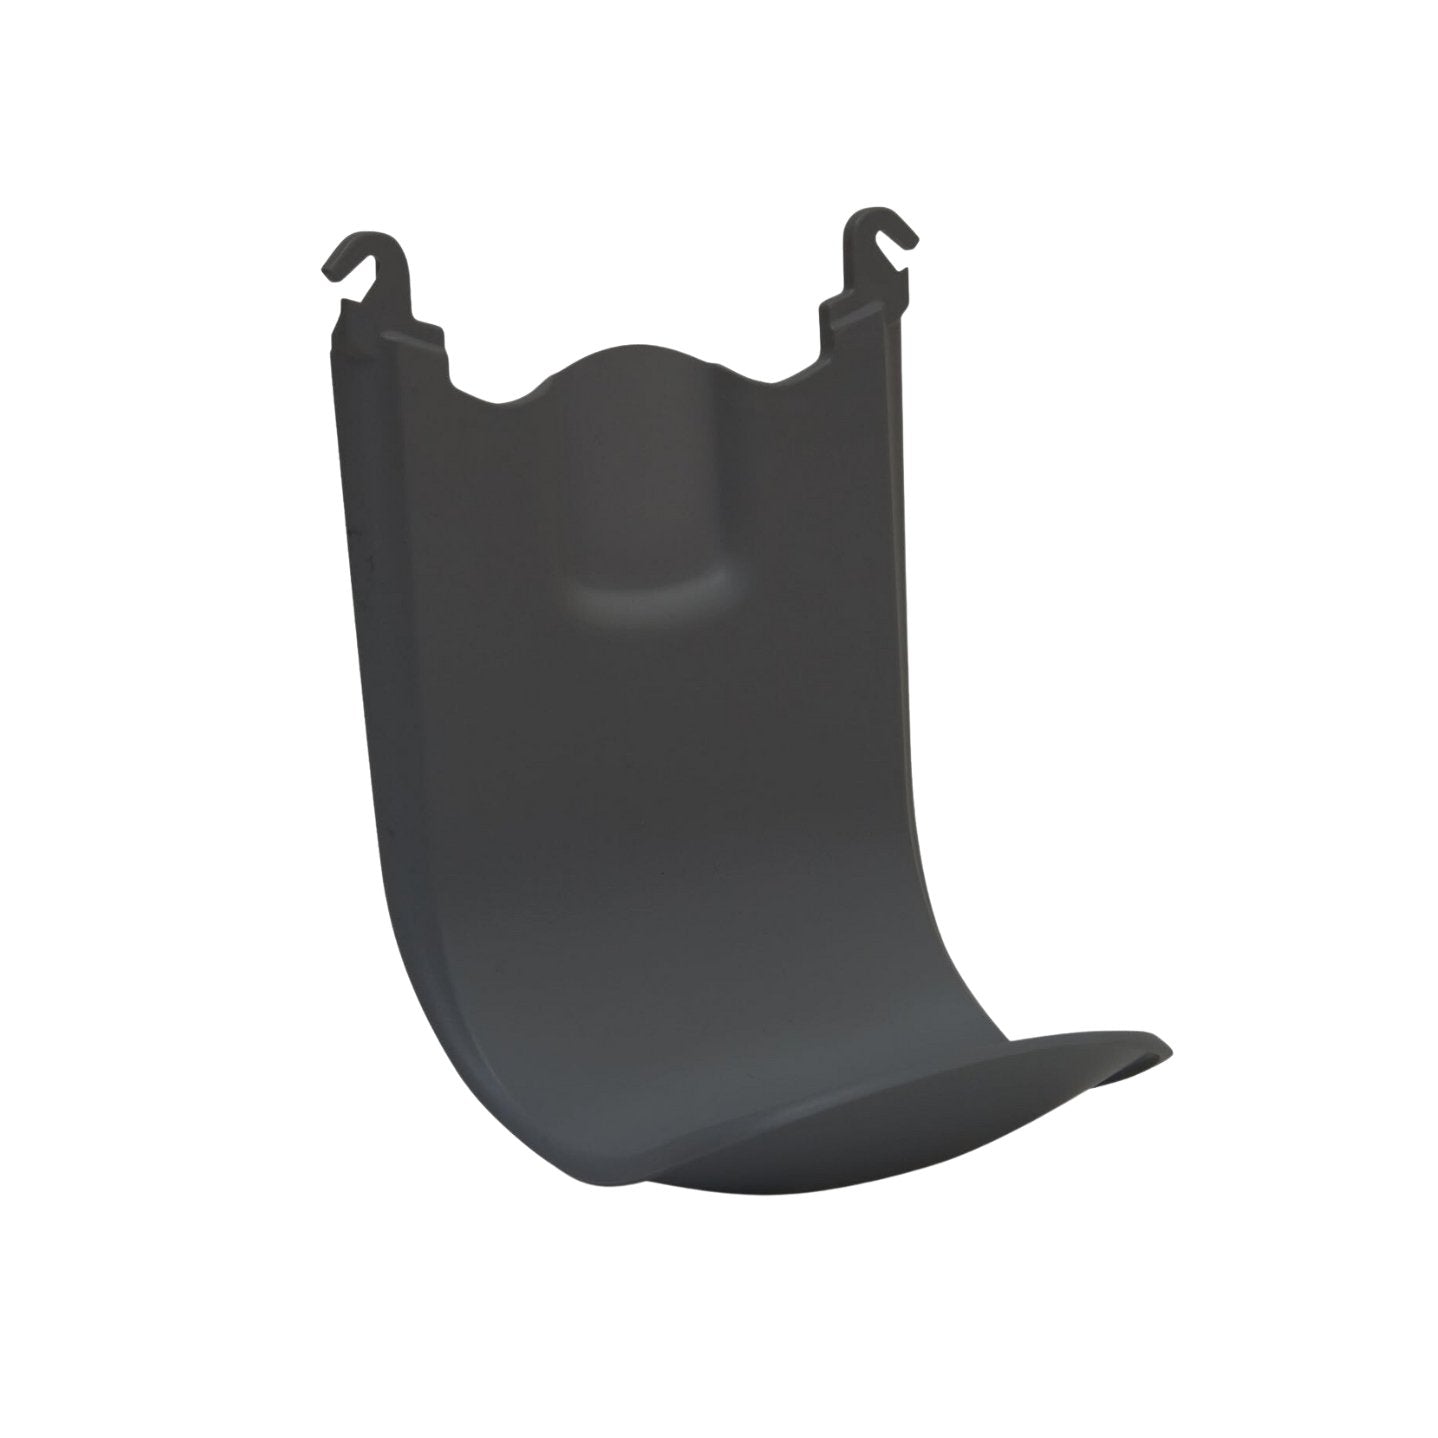 Protector de piso y pared, negro para Gojo TFX Touch Free Dispensadores (2762-06) - Karlan ¡Marca la Limpieza!2762-06